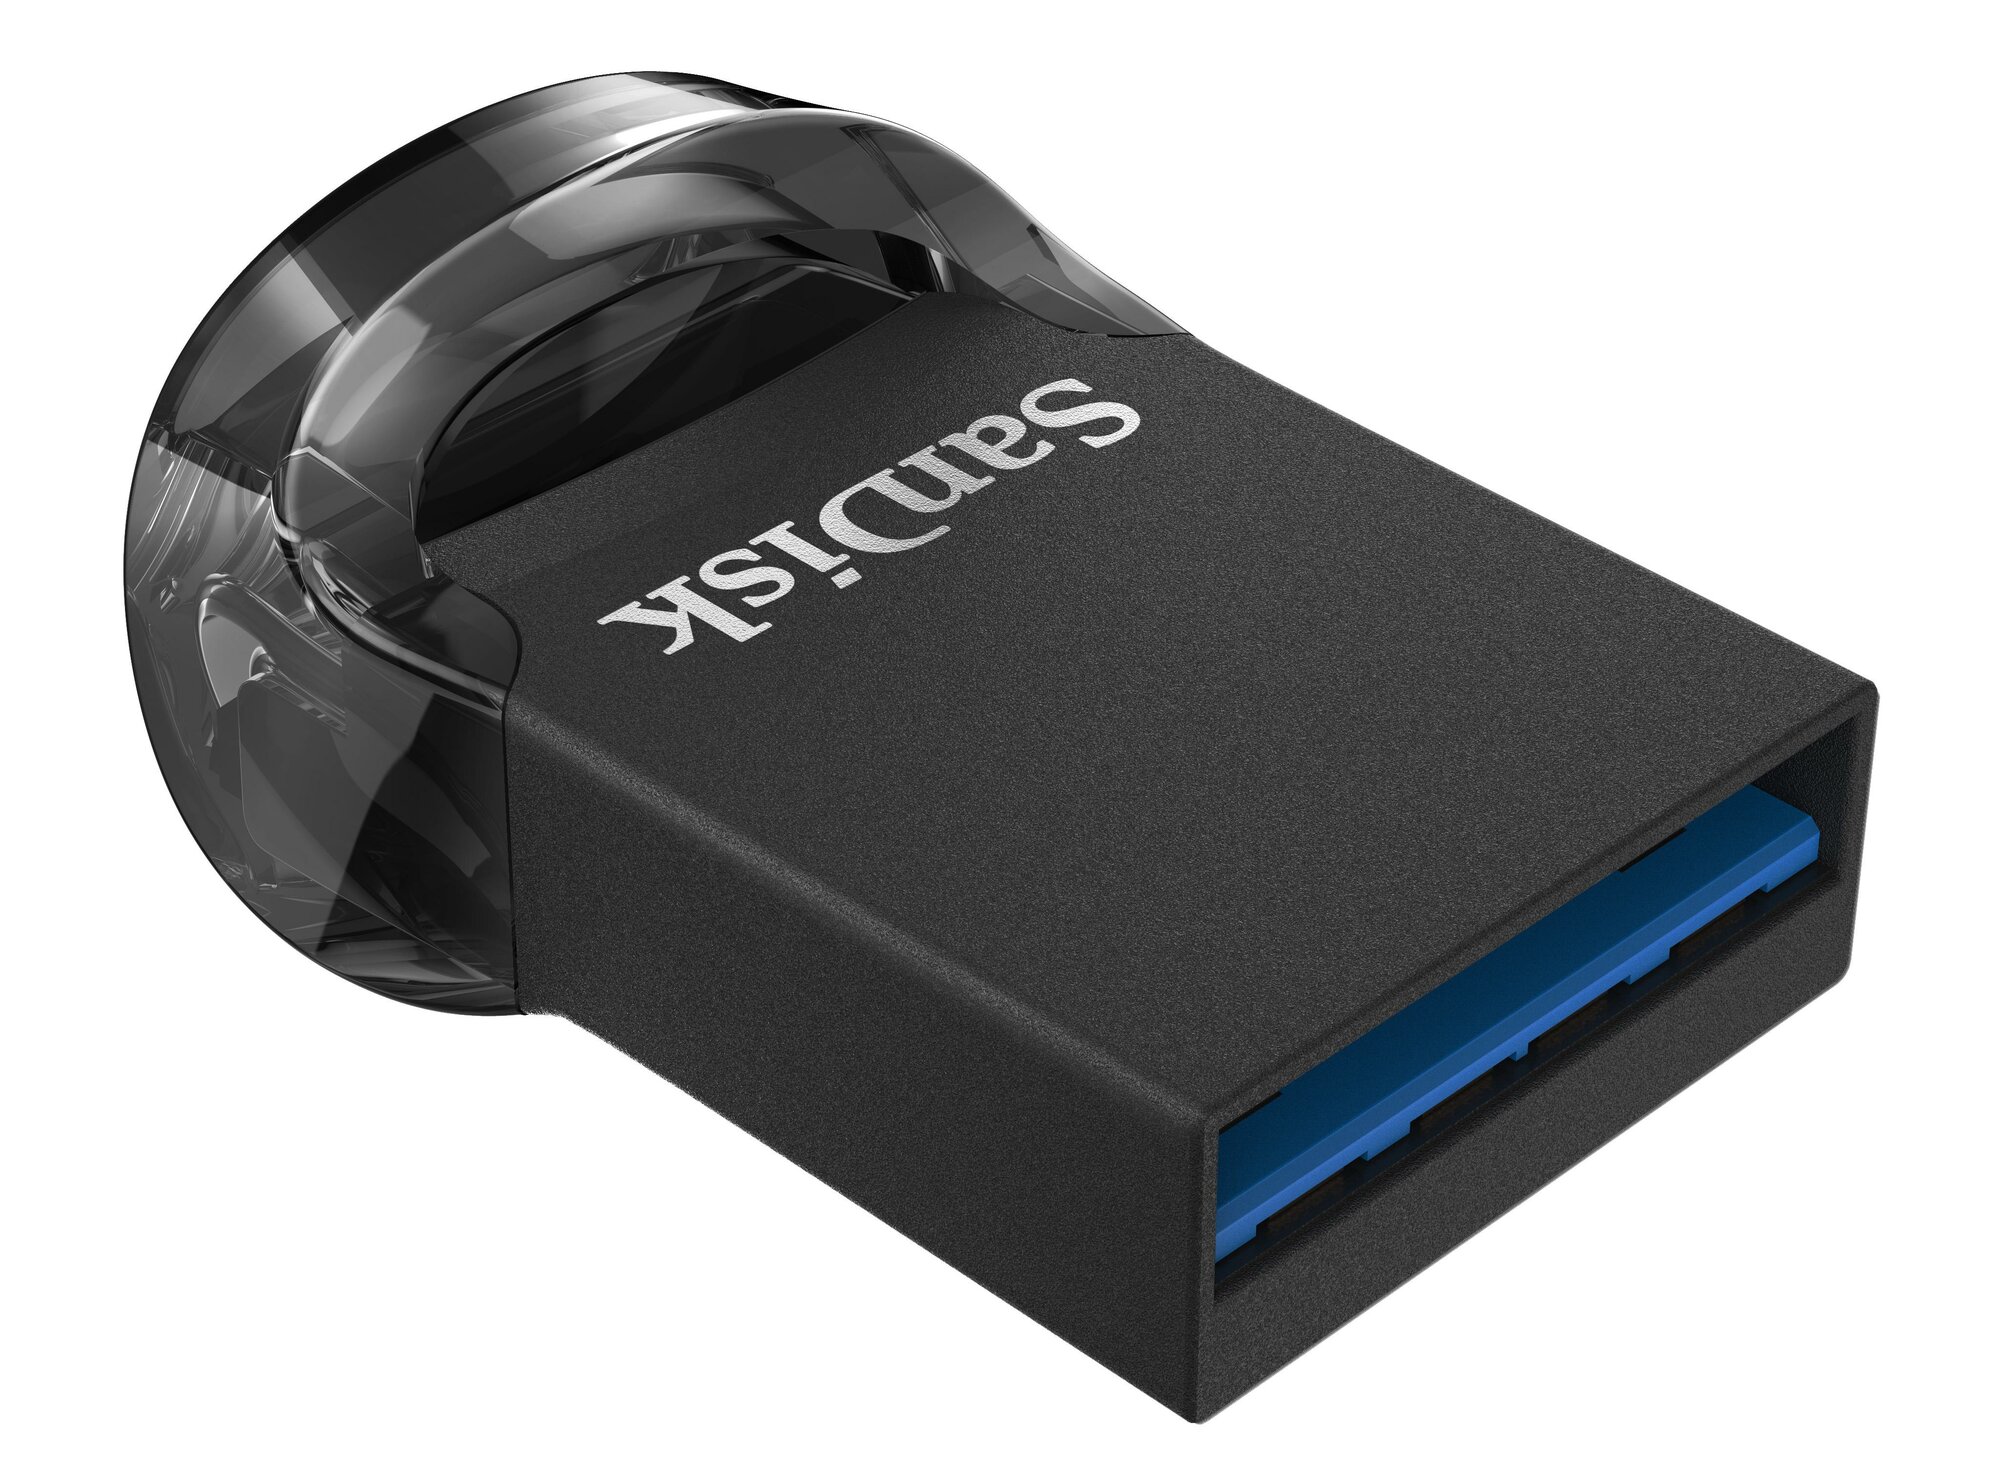 Флеш-память SanDisk Ultra Fit, 16Gb, USB 3.1 G1, чер, SDCZ430-016G-G46